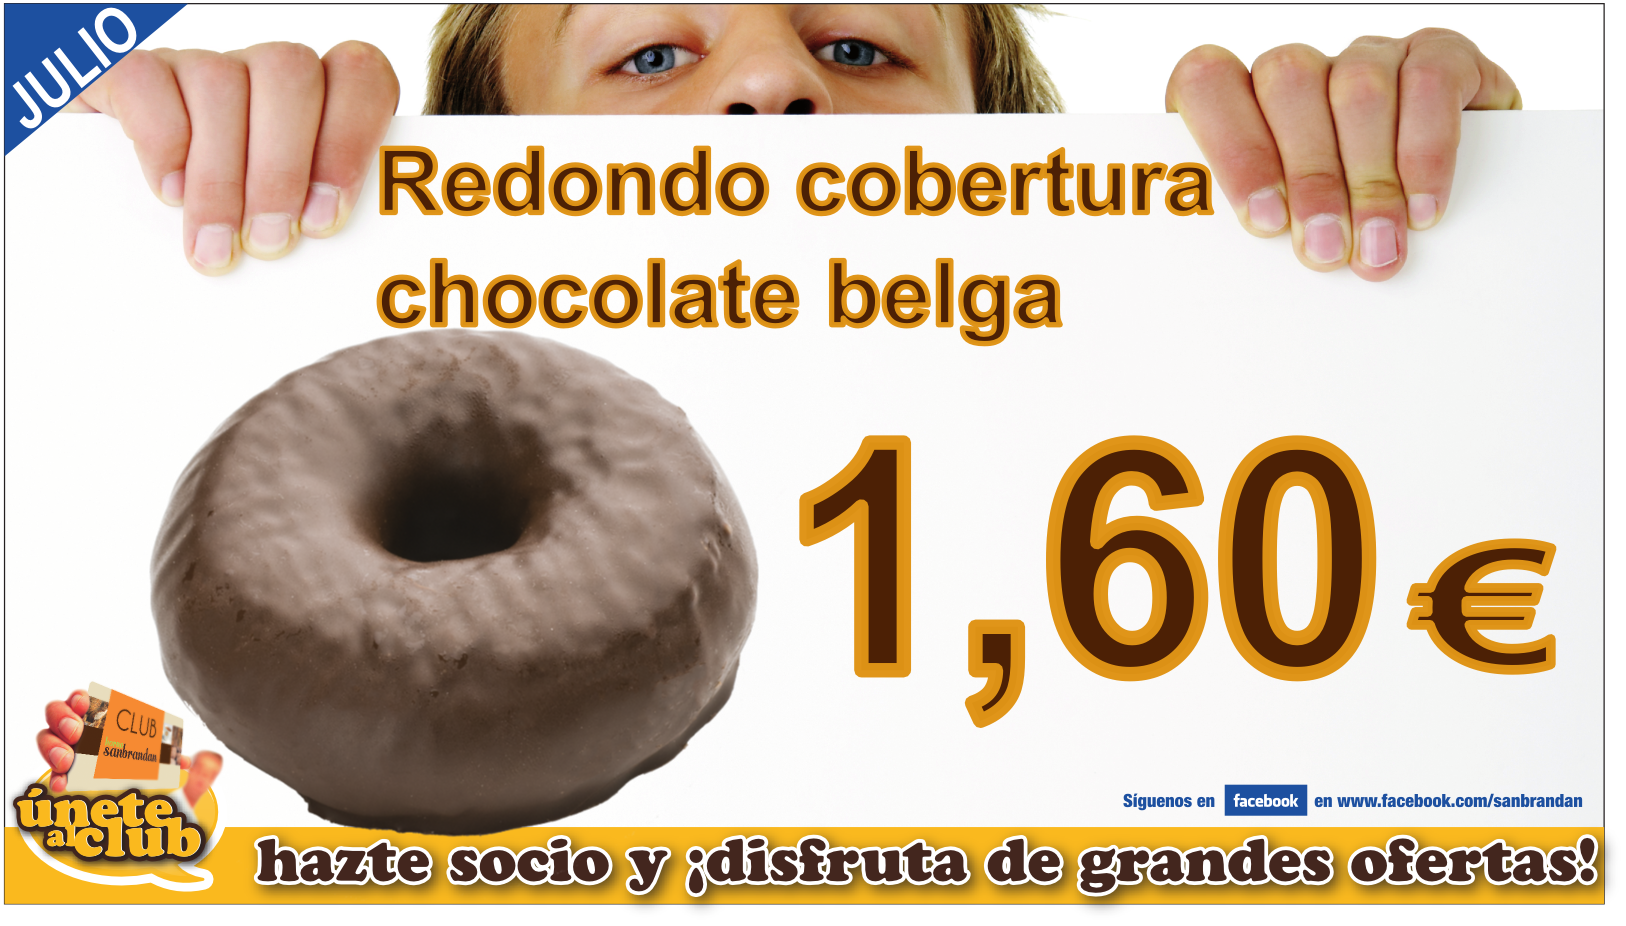 Redondo cobertura chocolate belga 0,60 €